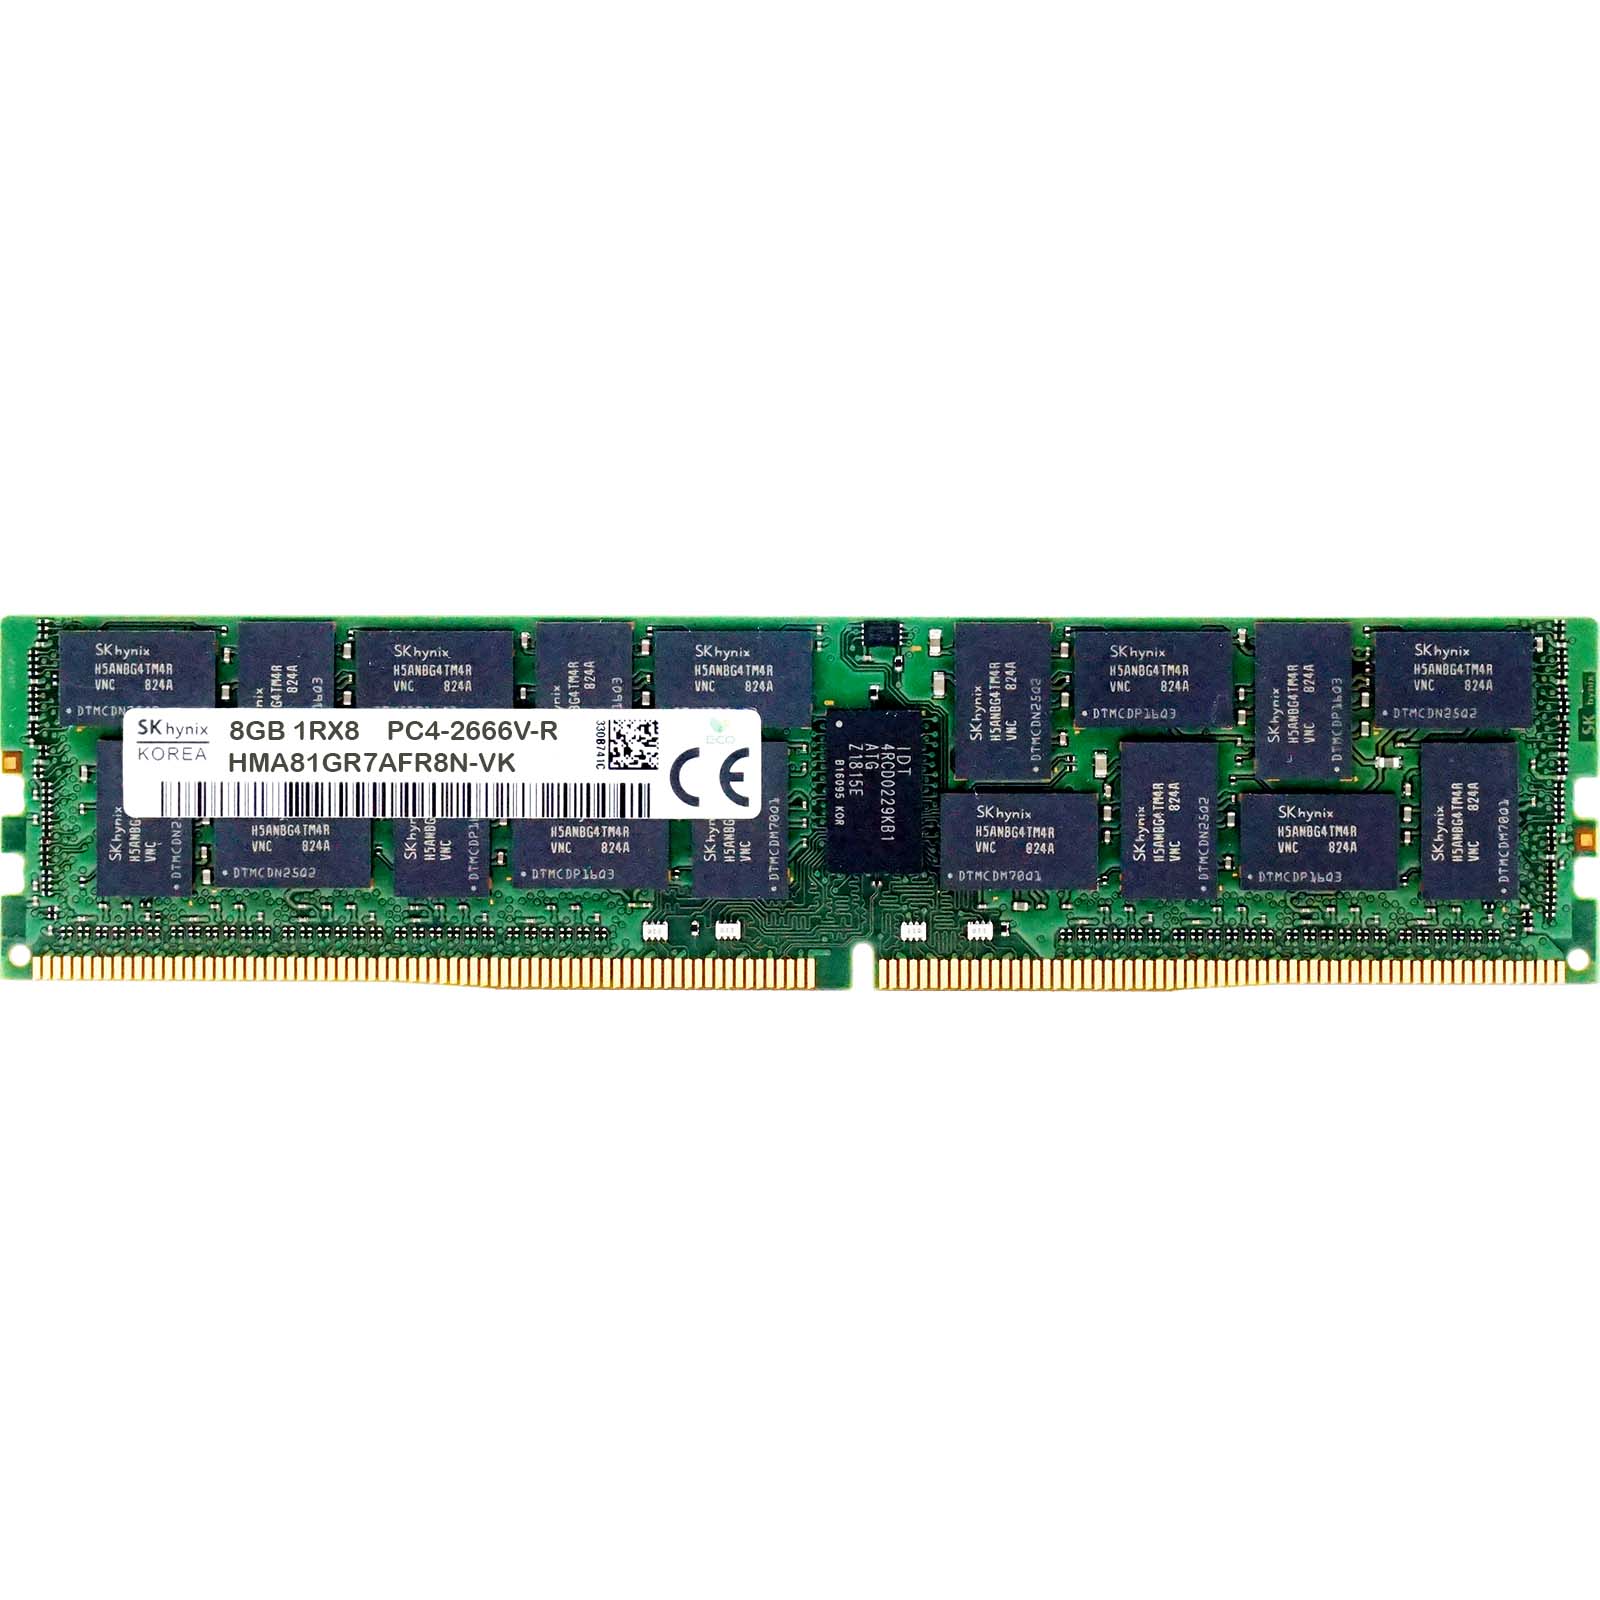 Hynix HMA81GR7AFR8N-VK 8GB PC4-21300V-R 1RX8 DDR4-2666MHz RAM